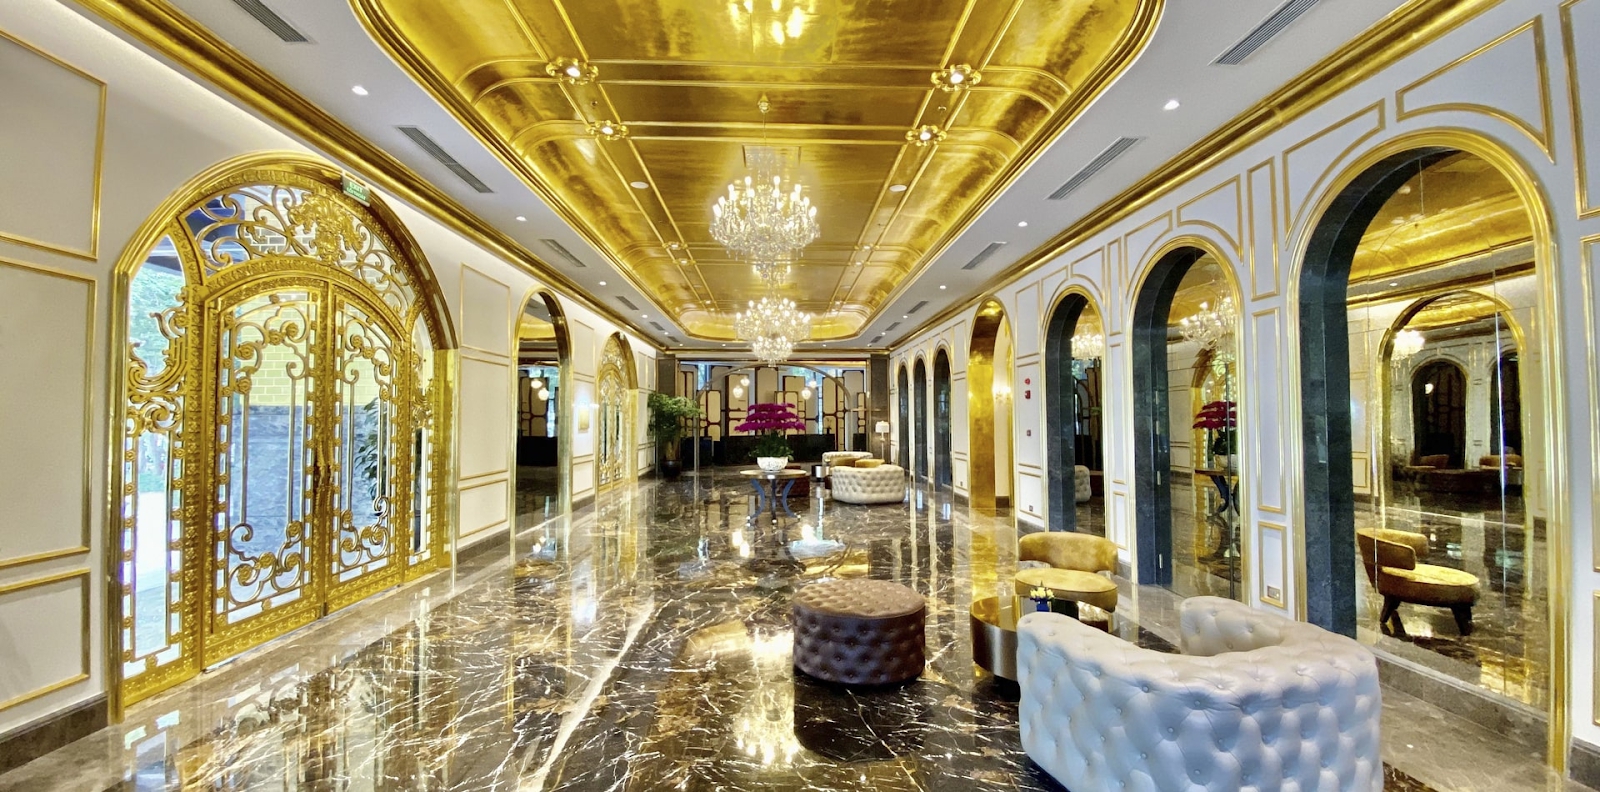 Báo quốc tế choáng ngợp với khách sạn phủ trong vàng theo đúng nghĩa đen giữa Hà Nội - Ảnh 1.